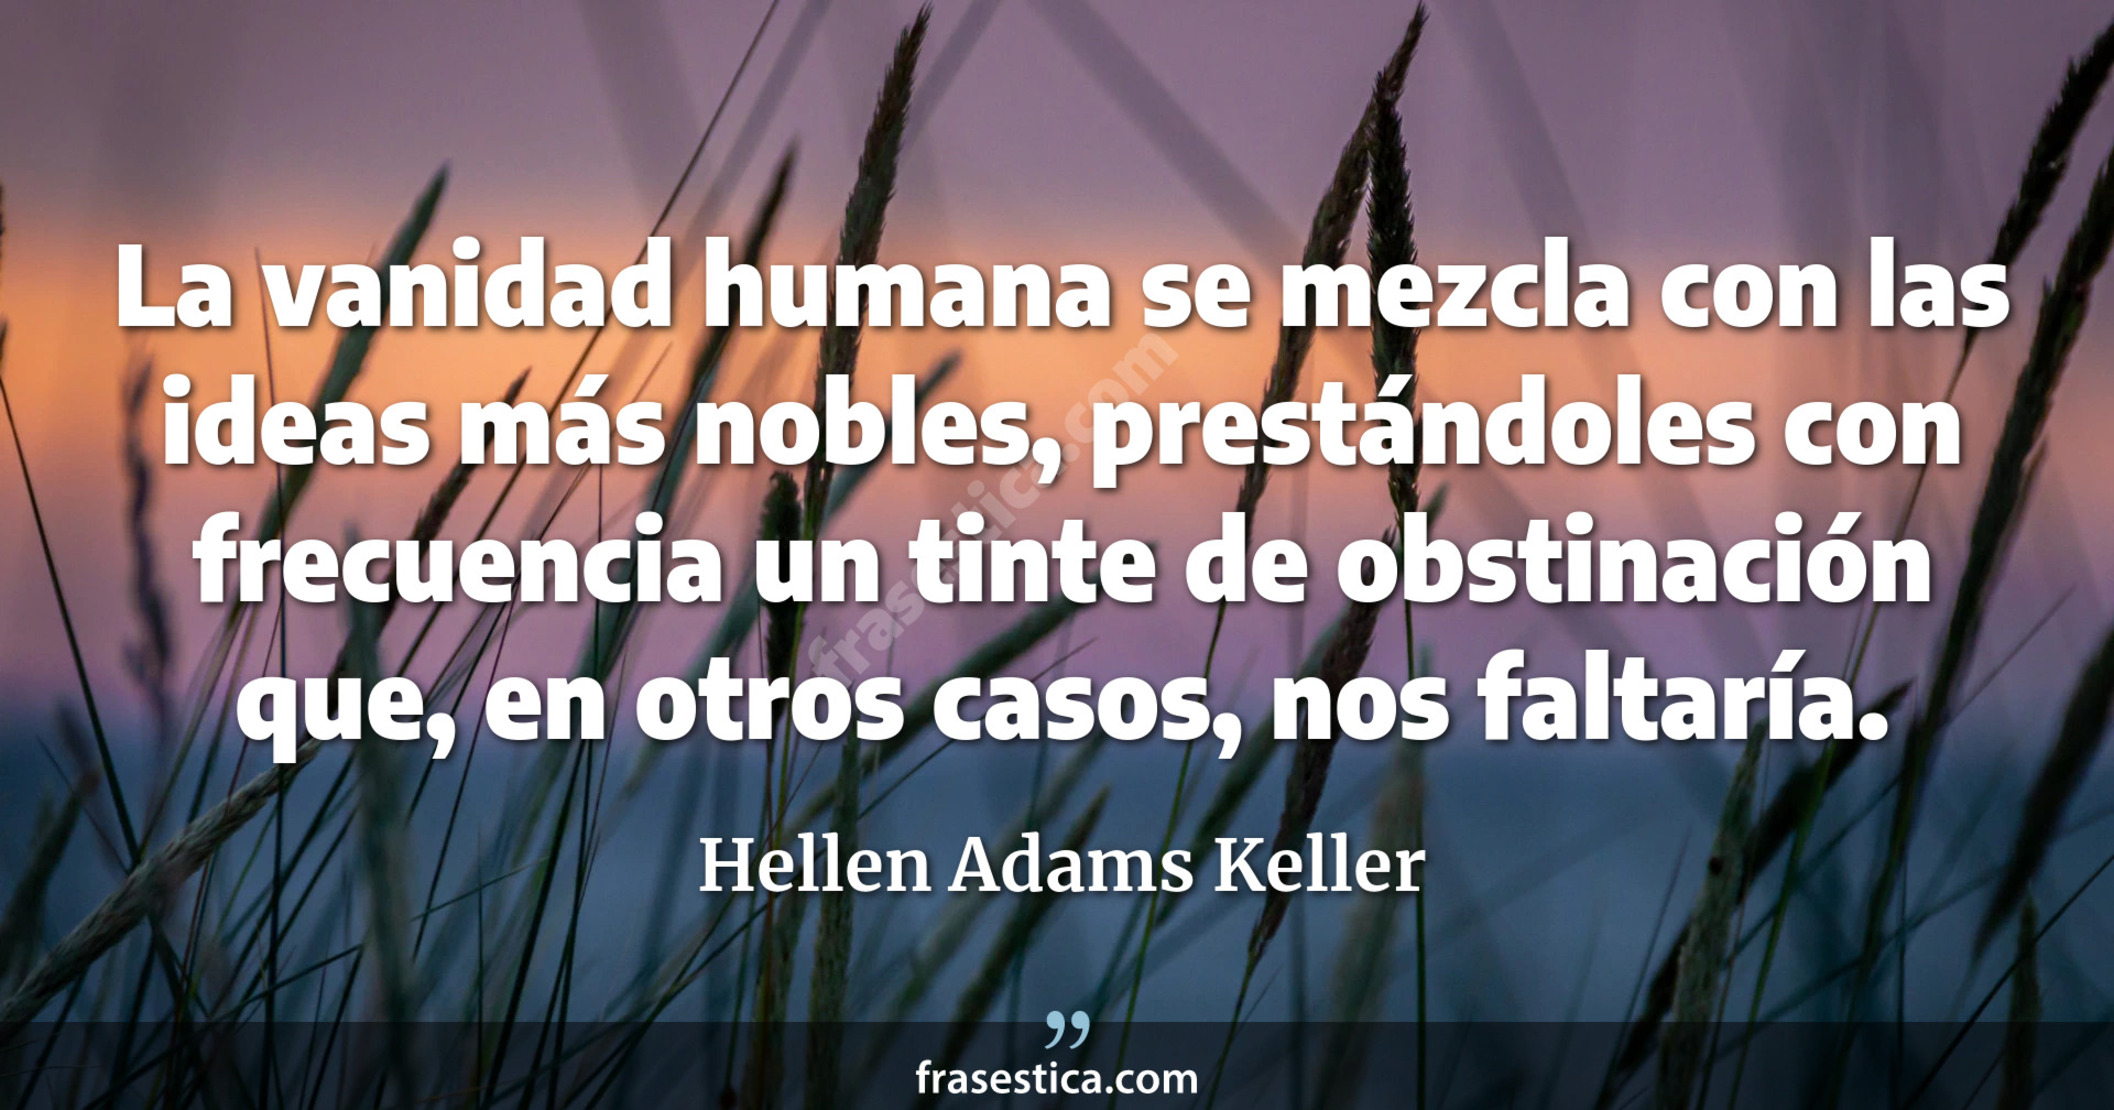 La vanidad humana se mezcla con las ideas más nobles, prestándoles con frecuencia un tinte de obstinación que, en otros casos, nos faltaría. - Hellen Adams Keller